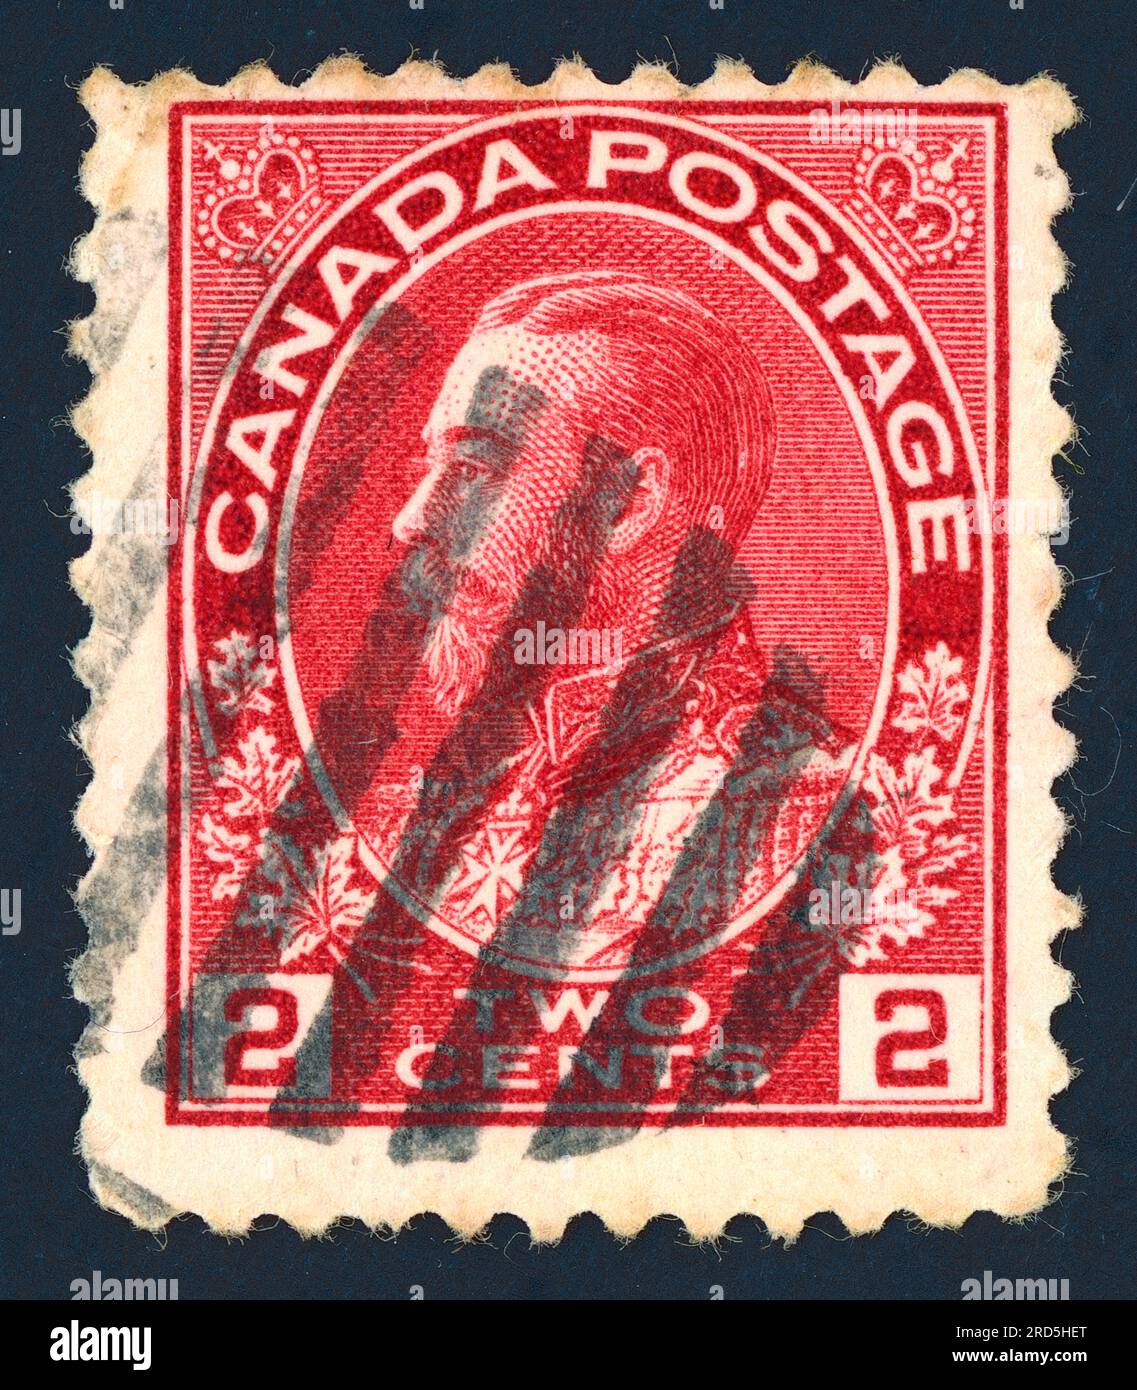 Roi George V (règne de 1910 à 1936). Timbre-poste émis au Canada dans les années 1910 Banque D'Images